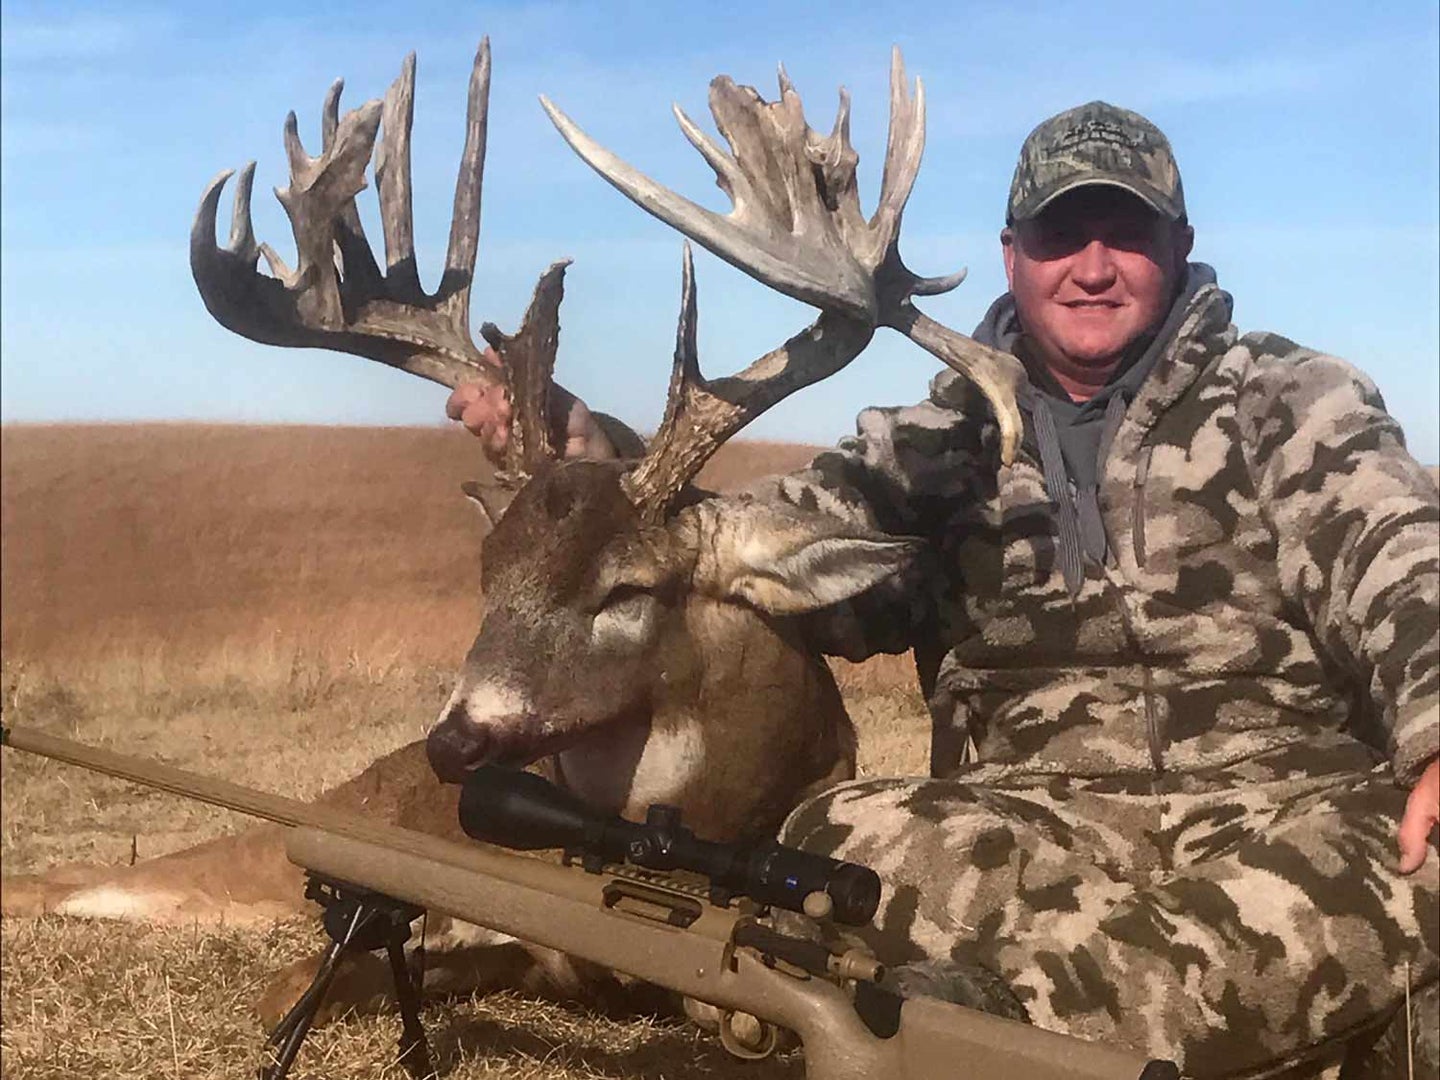 Douglas Lewis with his 246 5/8 Kansas giant buck